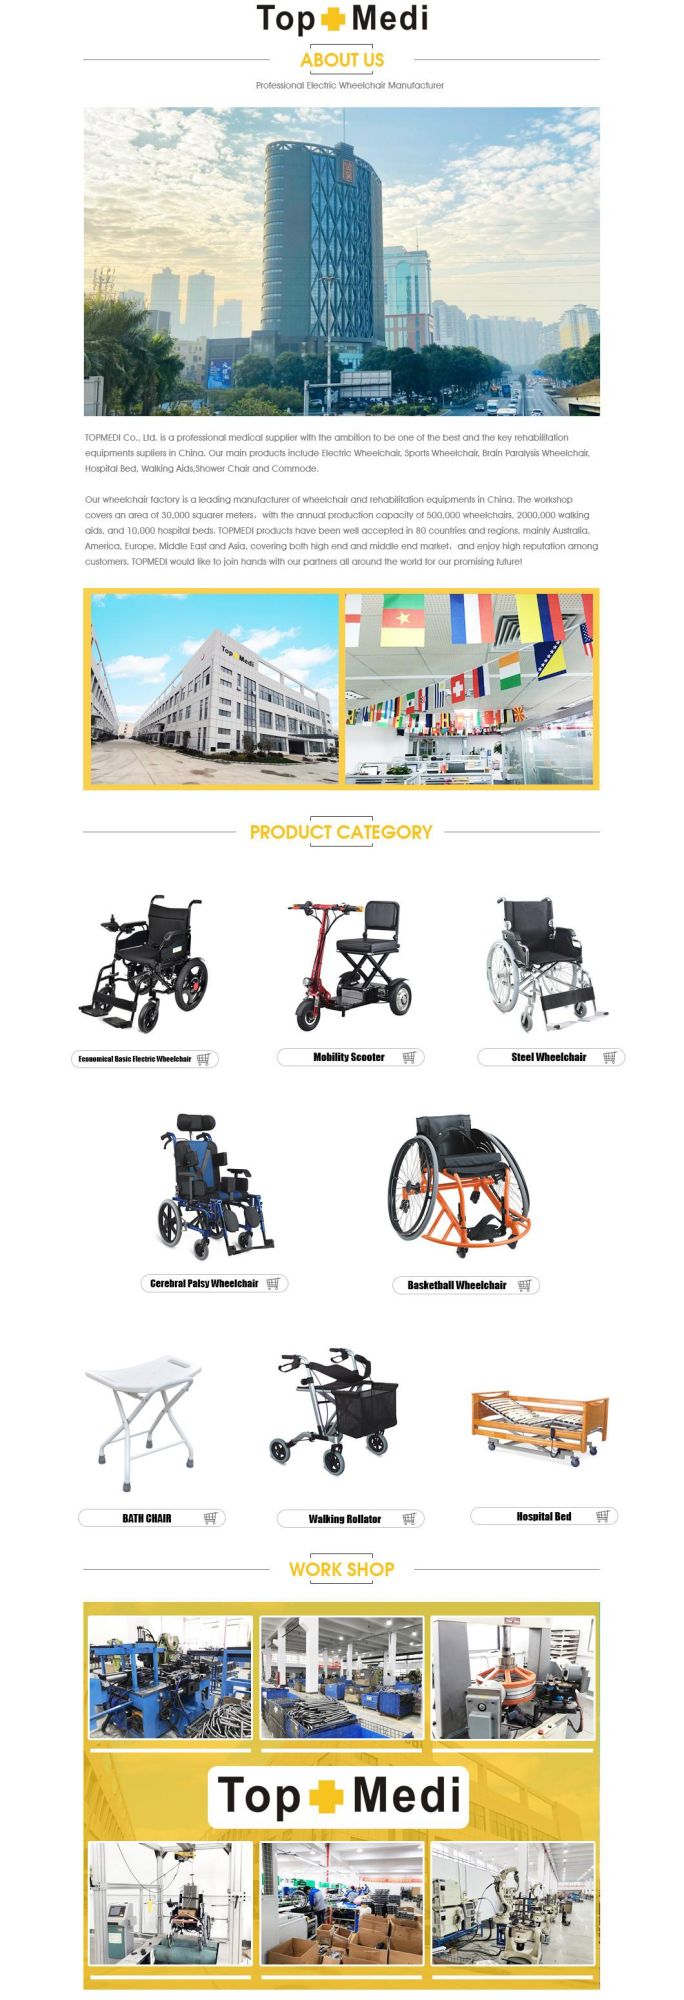 80X28X89cm, N. W. /G. W.: 17.9kg/20.4kg 46cm Hot Sales Wheelchair